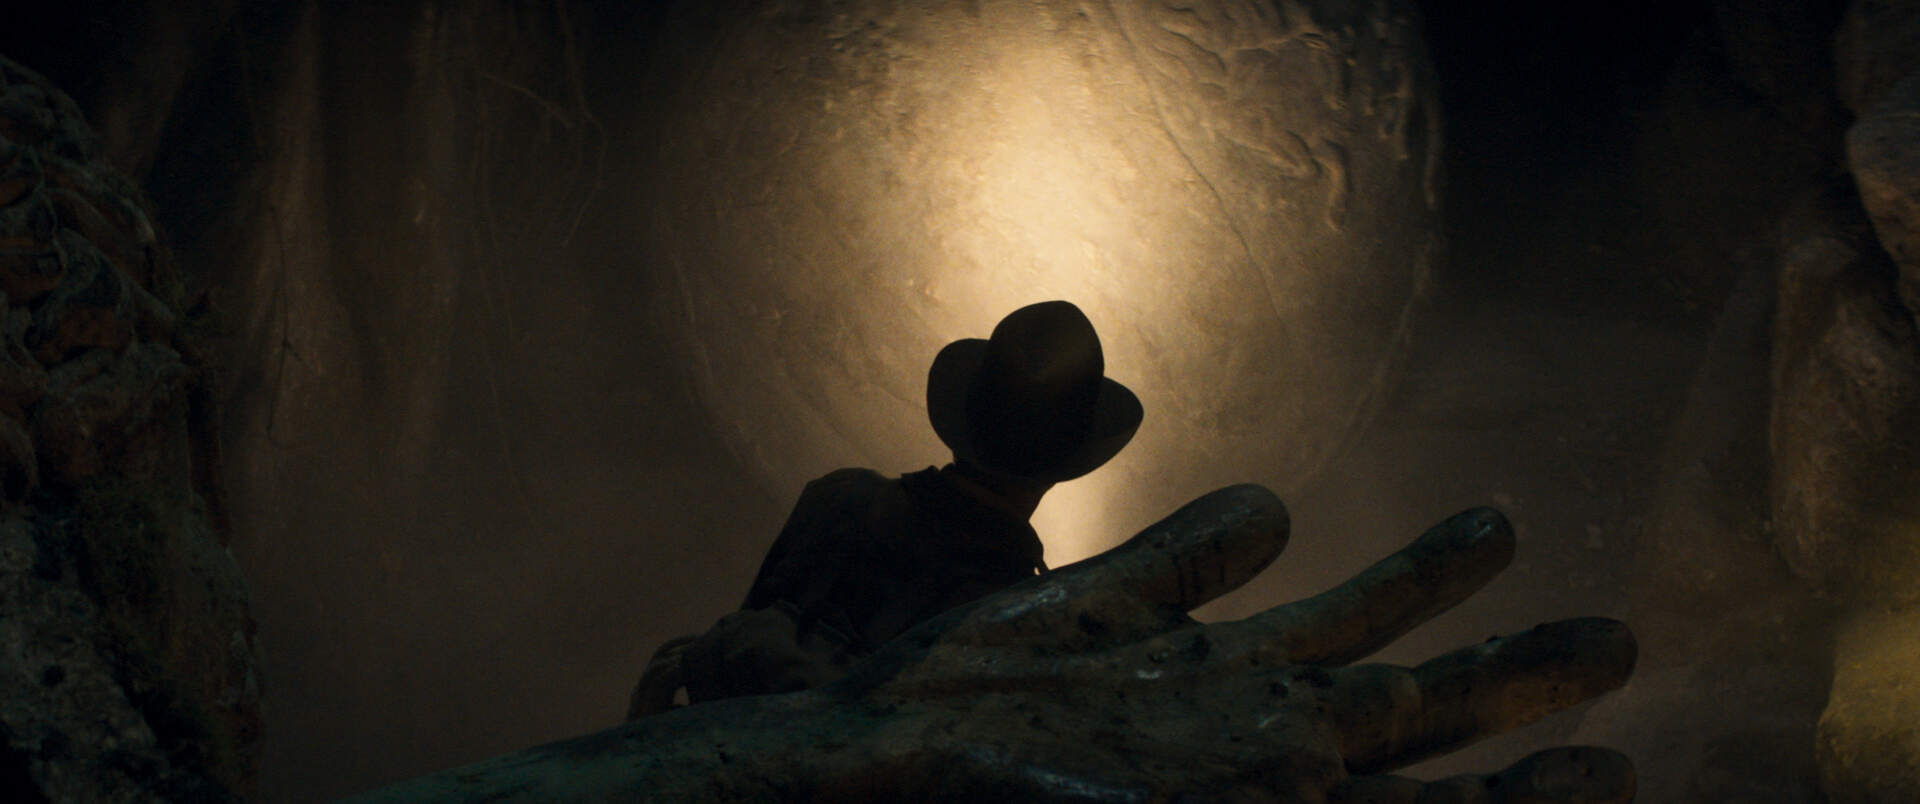 Indiana Jones und das Rad des Schicksals - Szenenbild 3 von 28